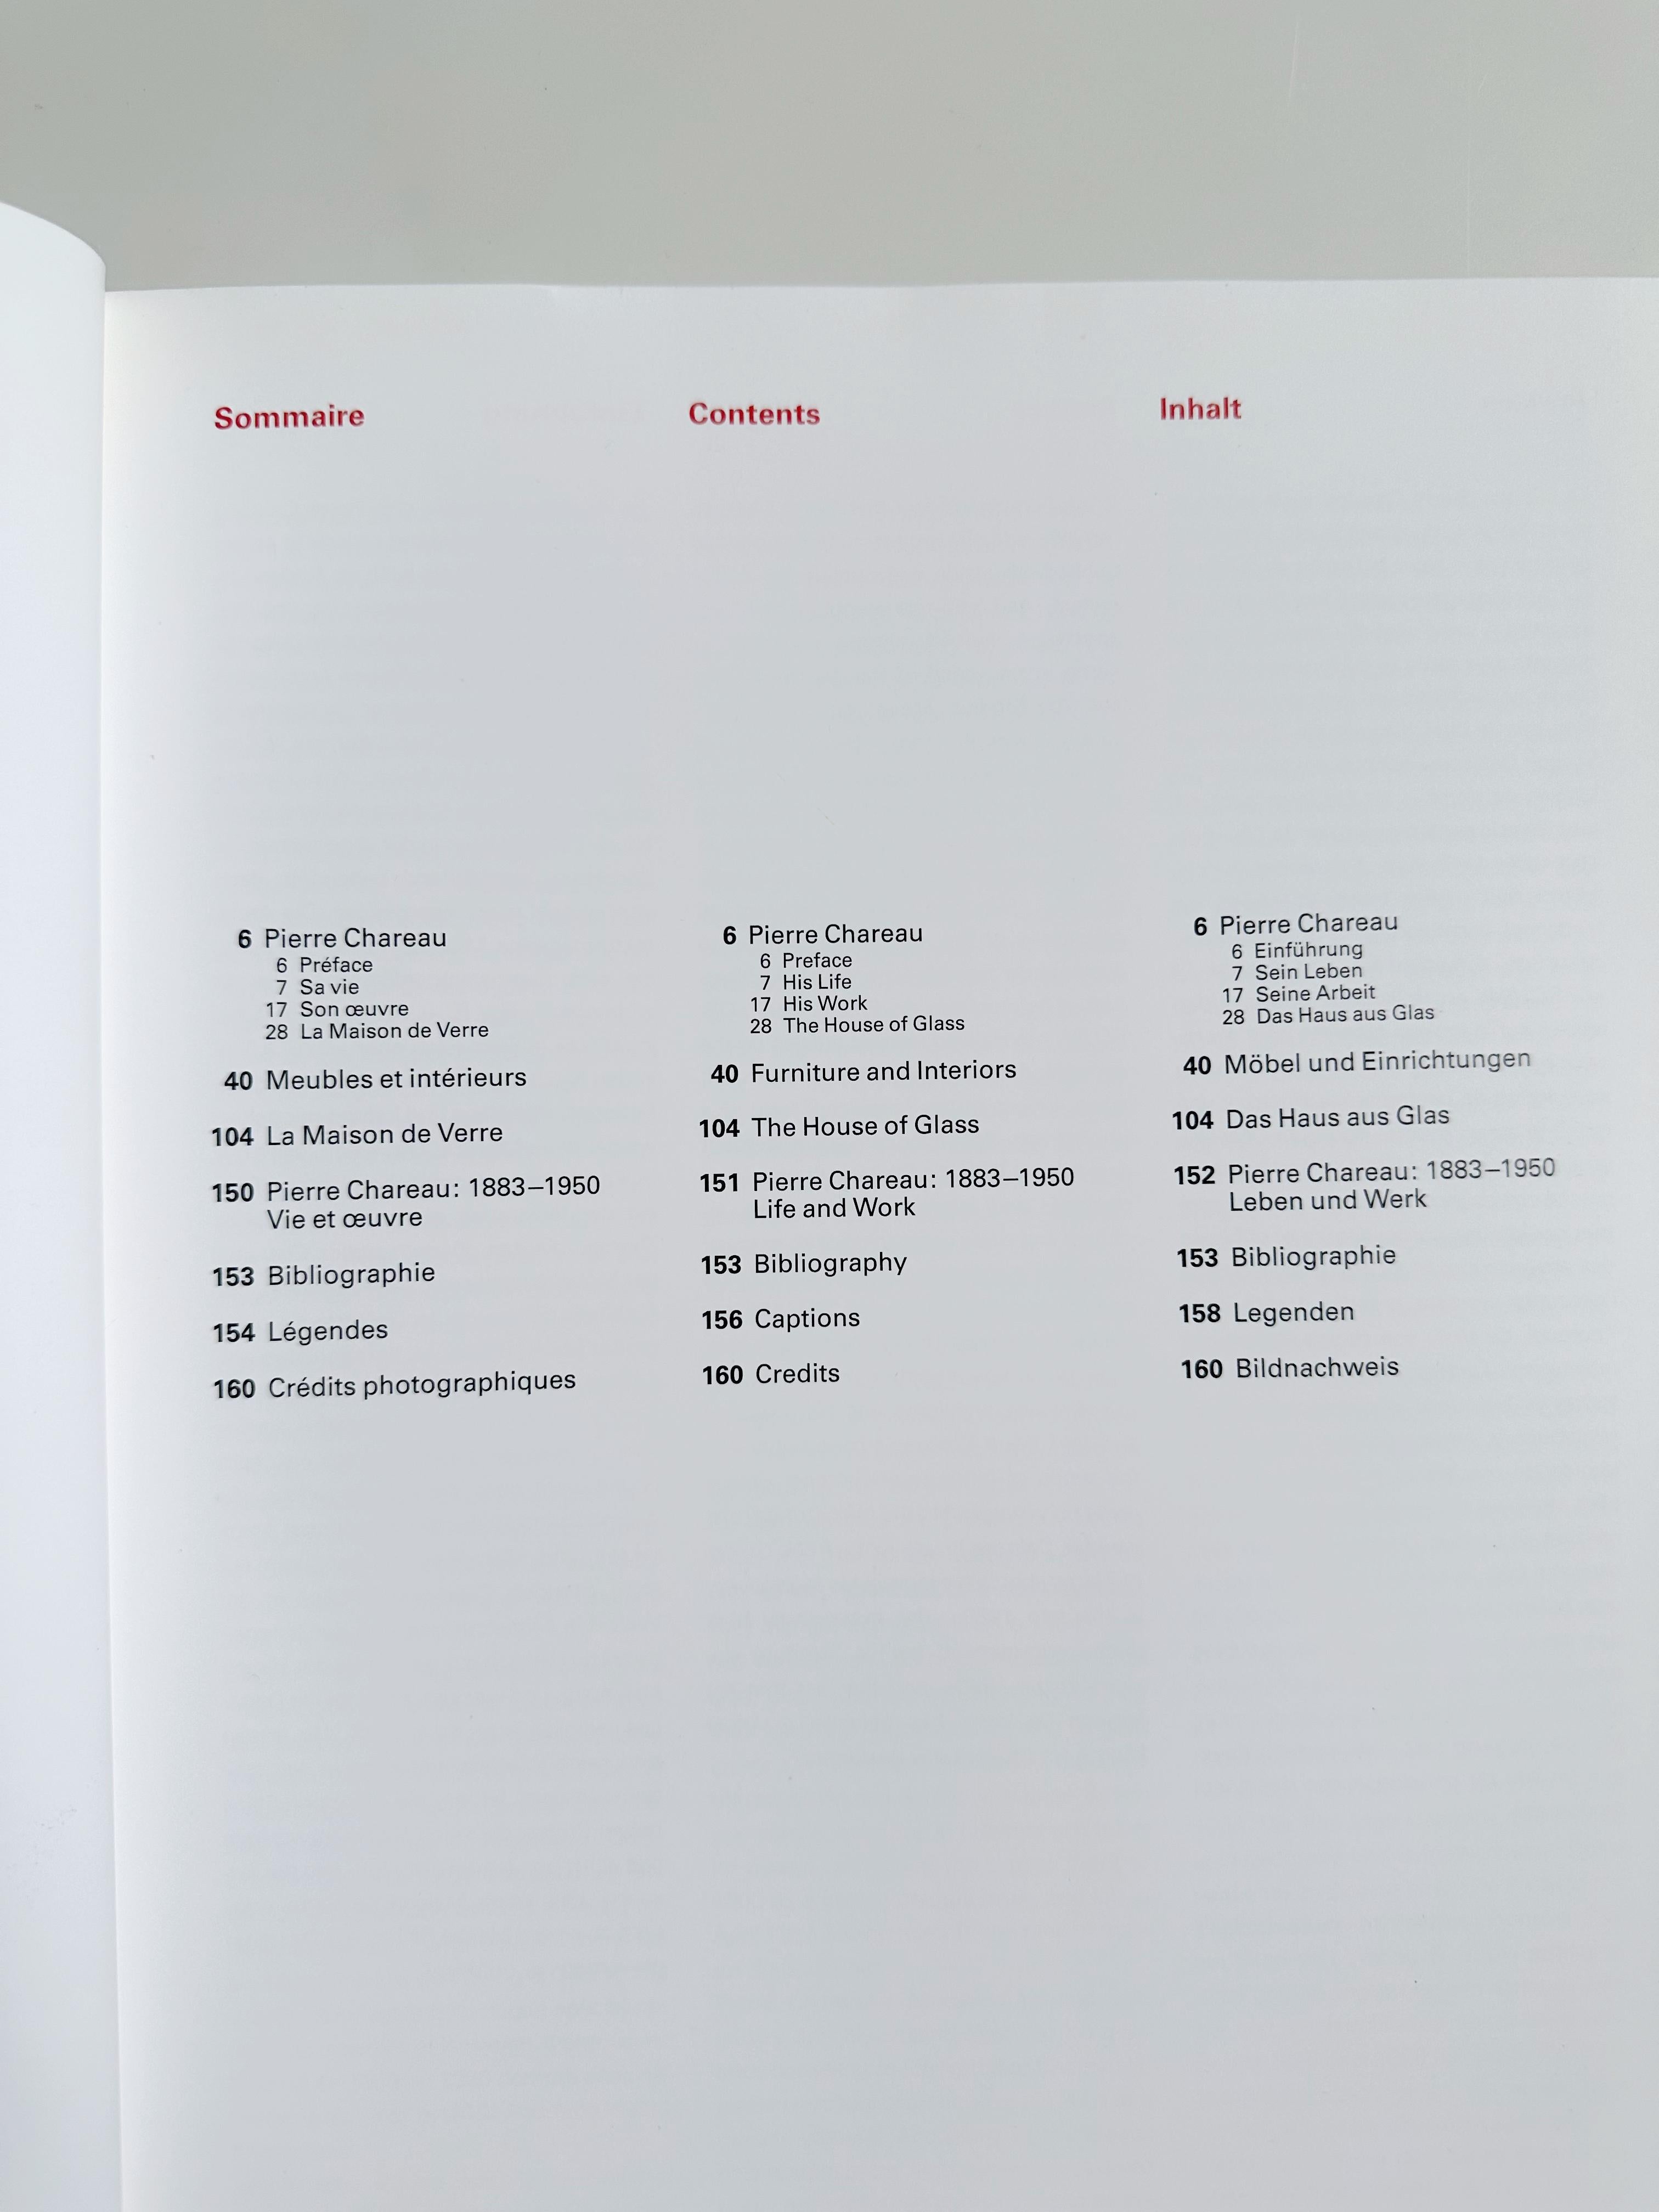 Pierre Chareau: Designer und Architekt von Brian Brace Taylor, 1998

Taschenbuch

//

9 x 12
160 Seiten
// u2028

*Sehr guter Zustand, geringe Gebrauchsspuren